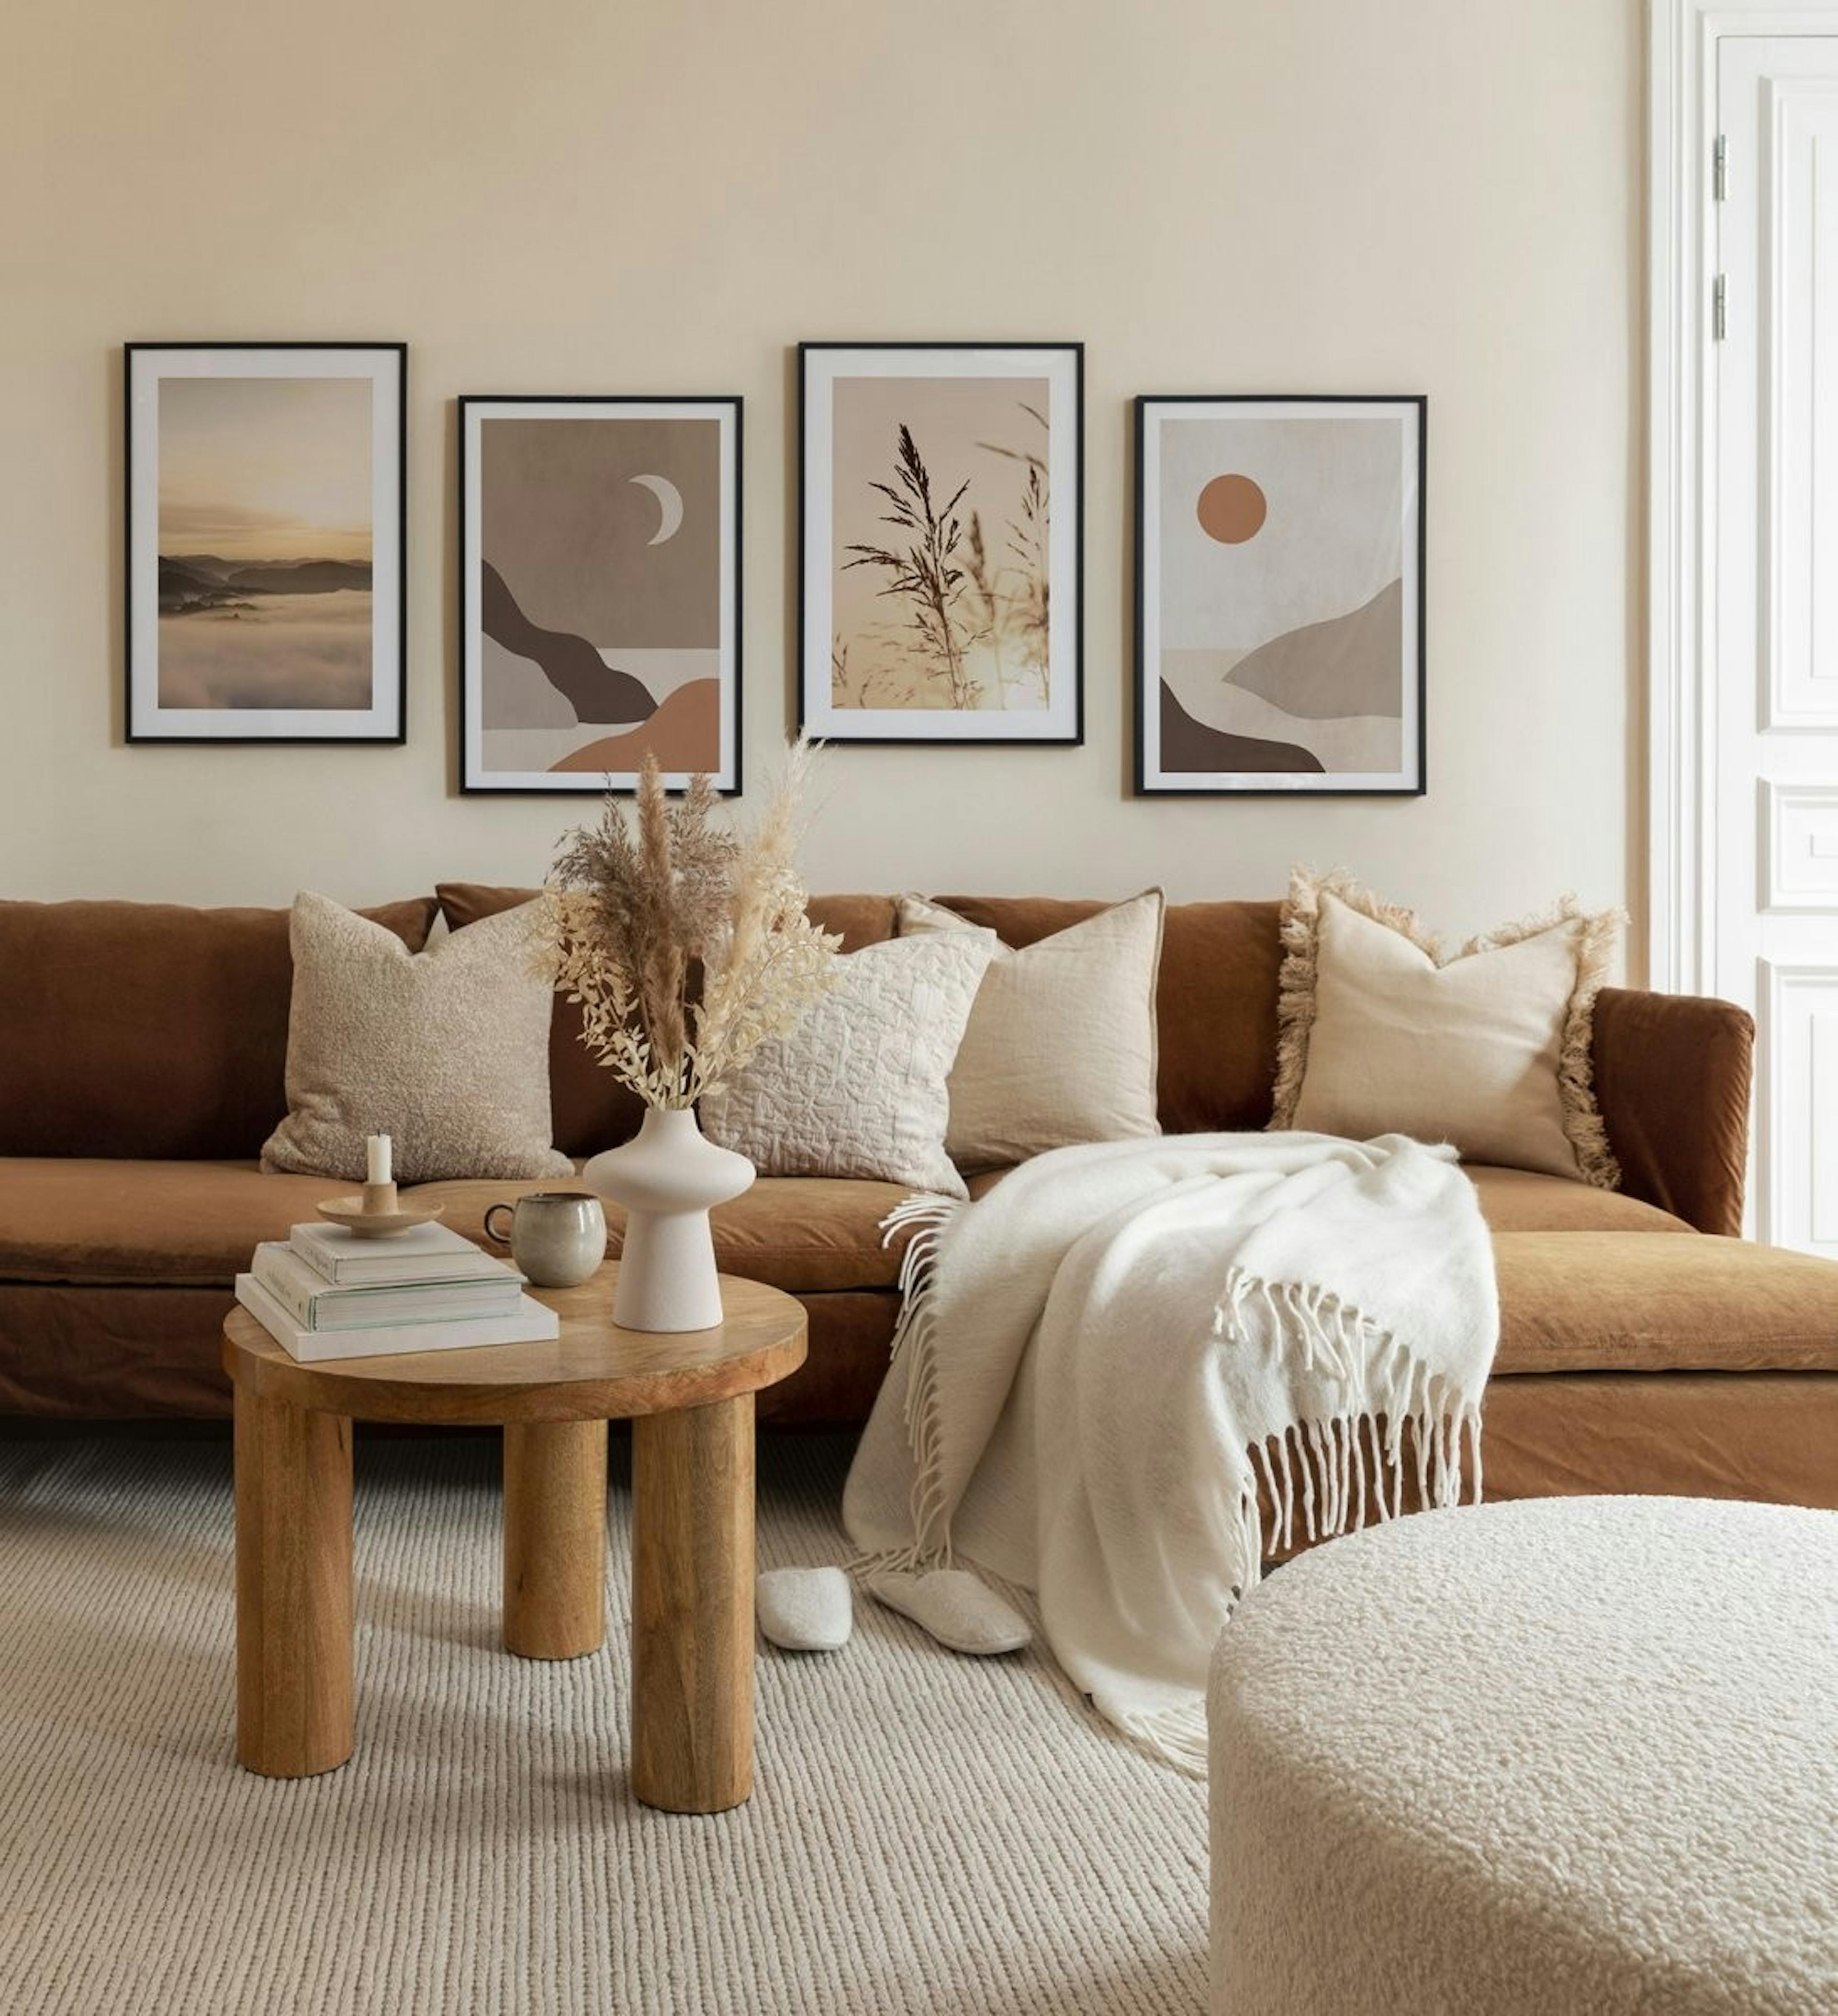 Serena galería de pared en tonos marrones y beige con posters de paisajes junto con marcos de madera oscura para el salón